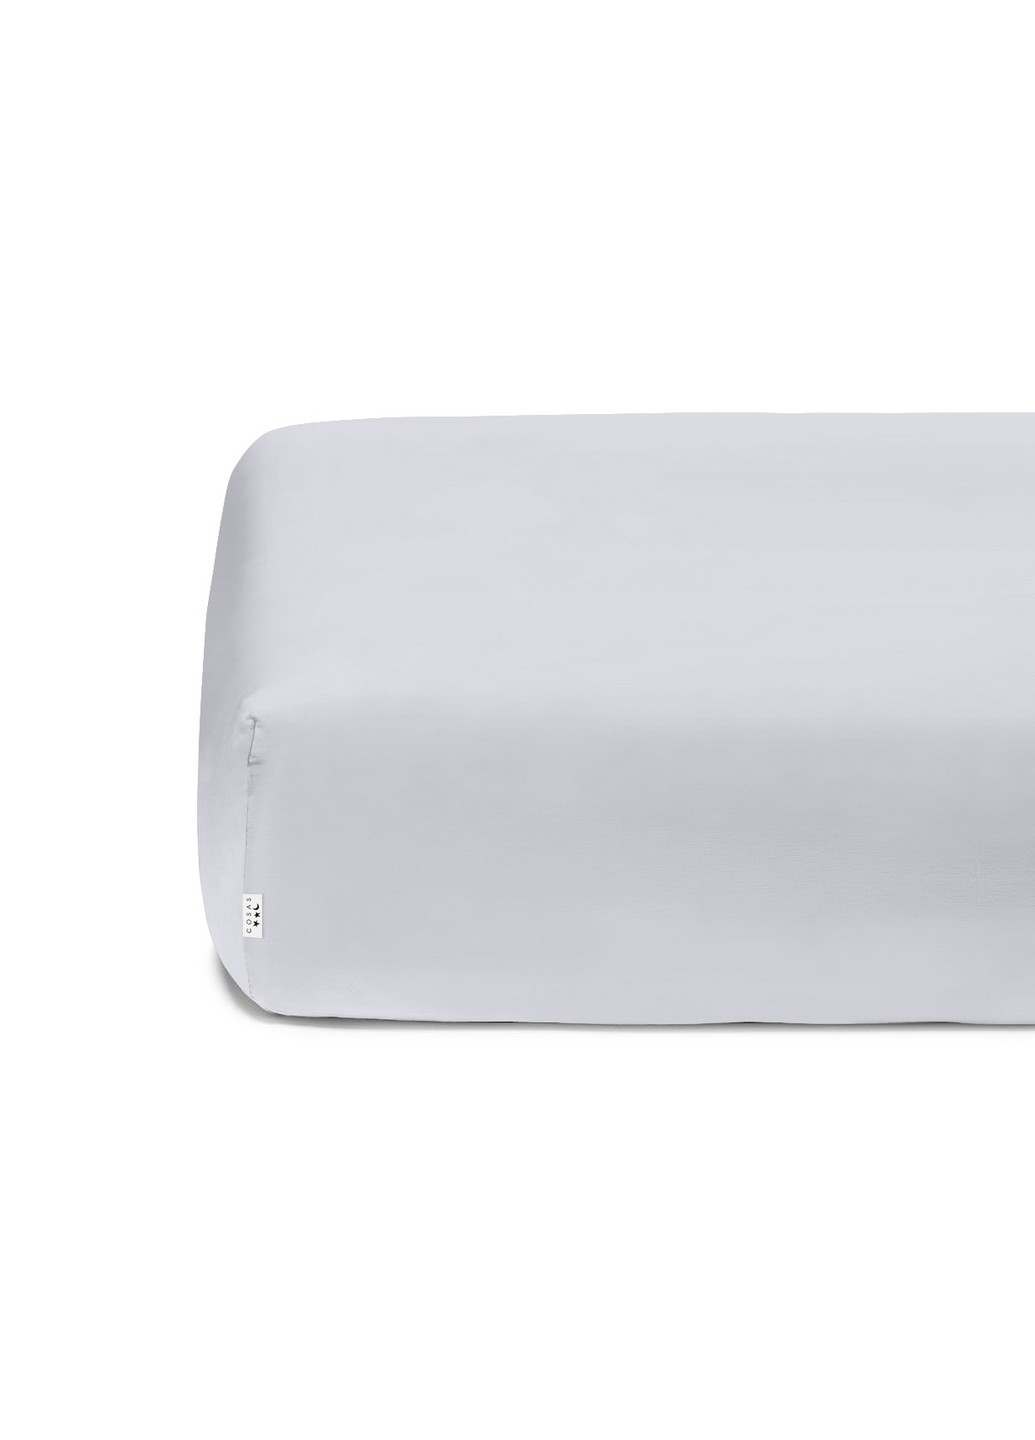 Комплект детского постельного белья на резинке Cell Ashrose Grey 110х140 см (4822052082584) Cosas (252029515)